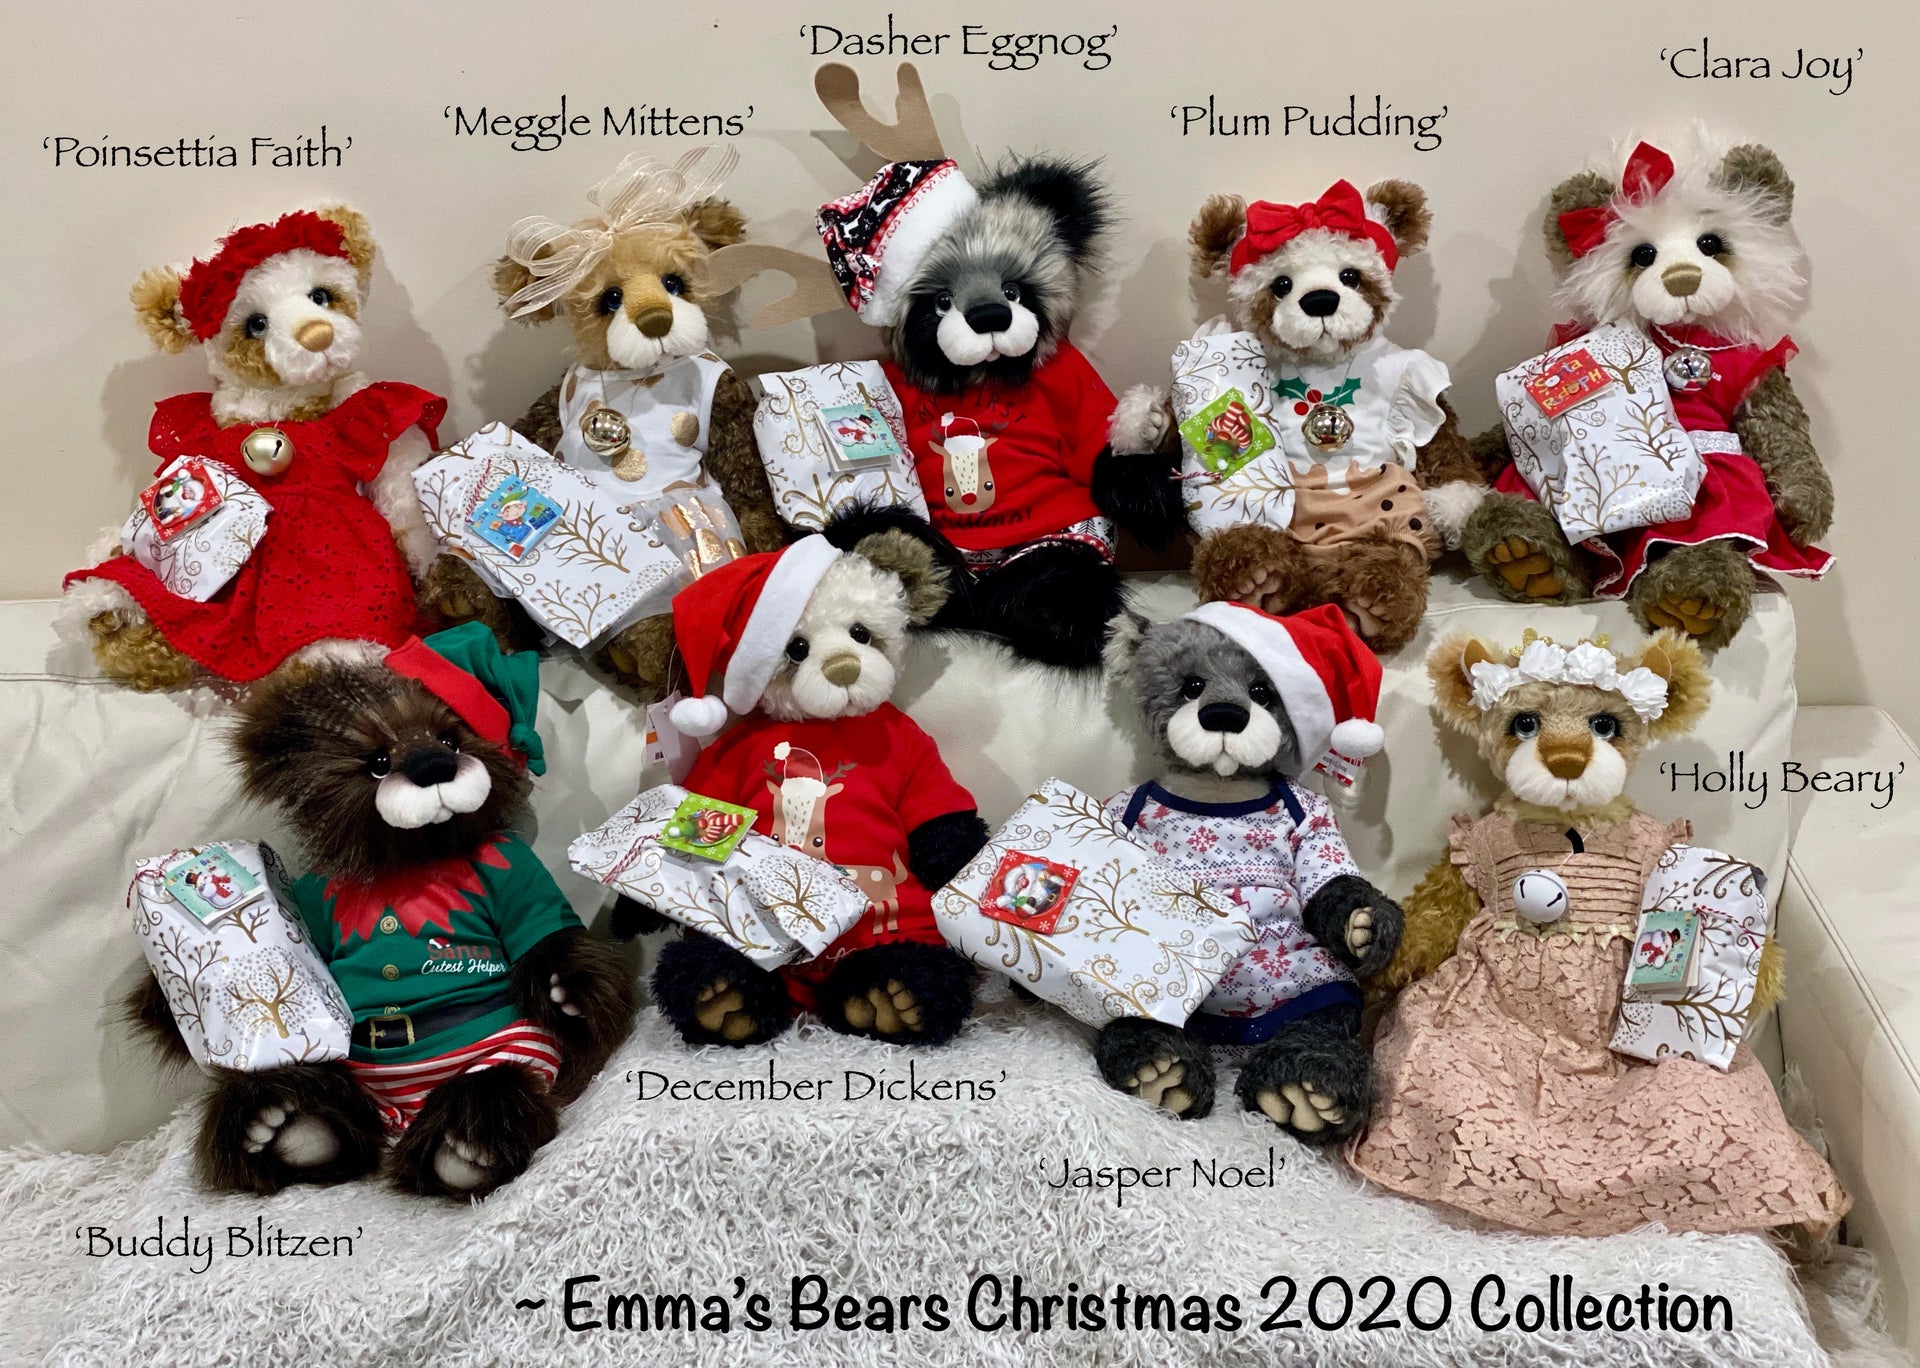 Clara Joy - 18" Christmas 2020 MOHAIR Artist toddler style Bear by Emma's Bears - OOAK